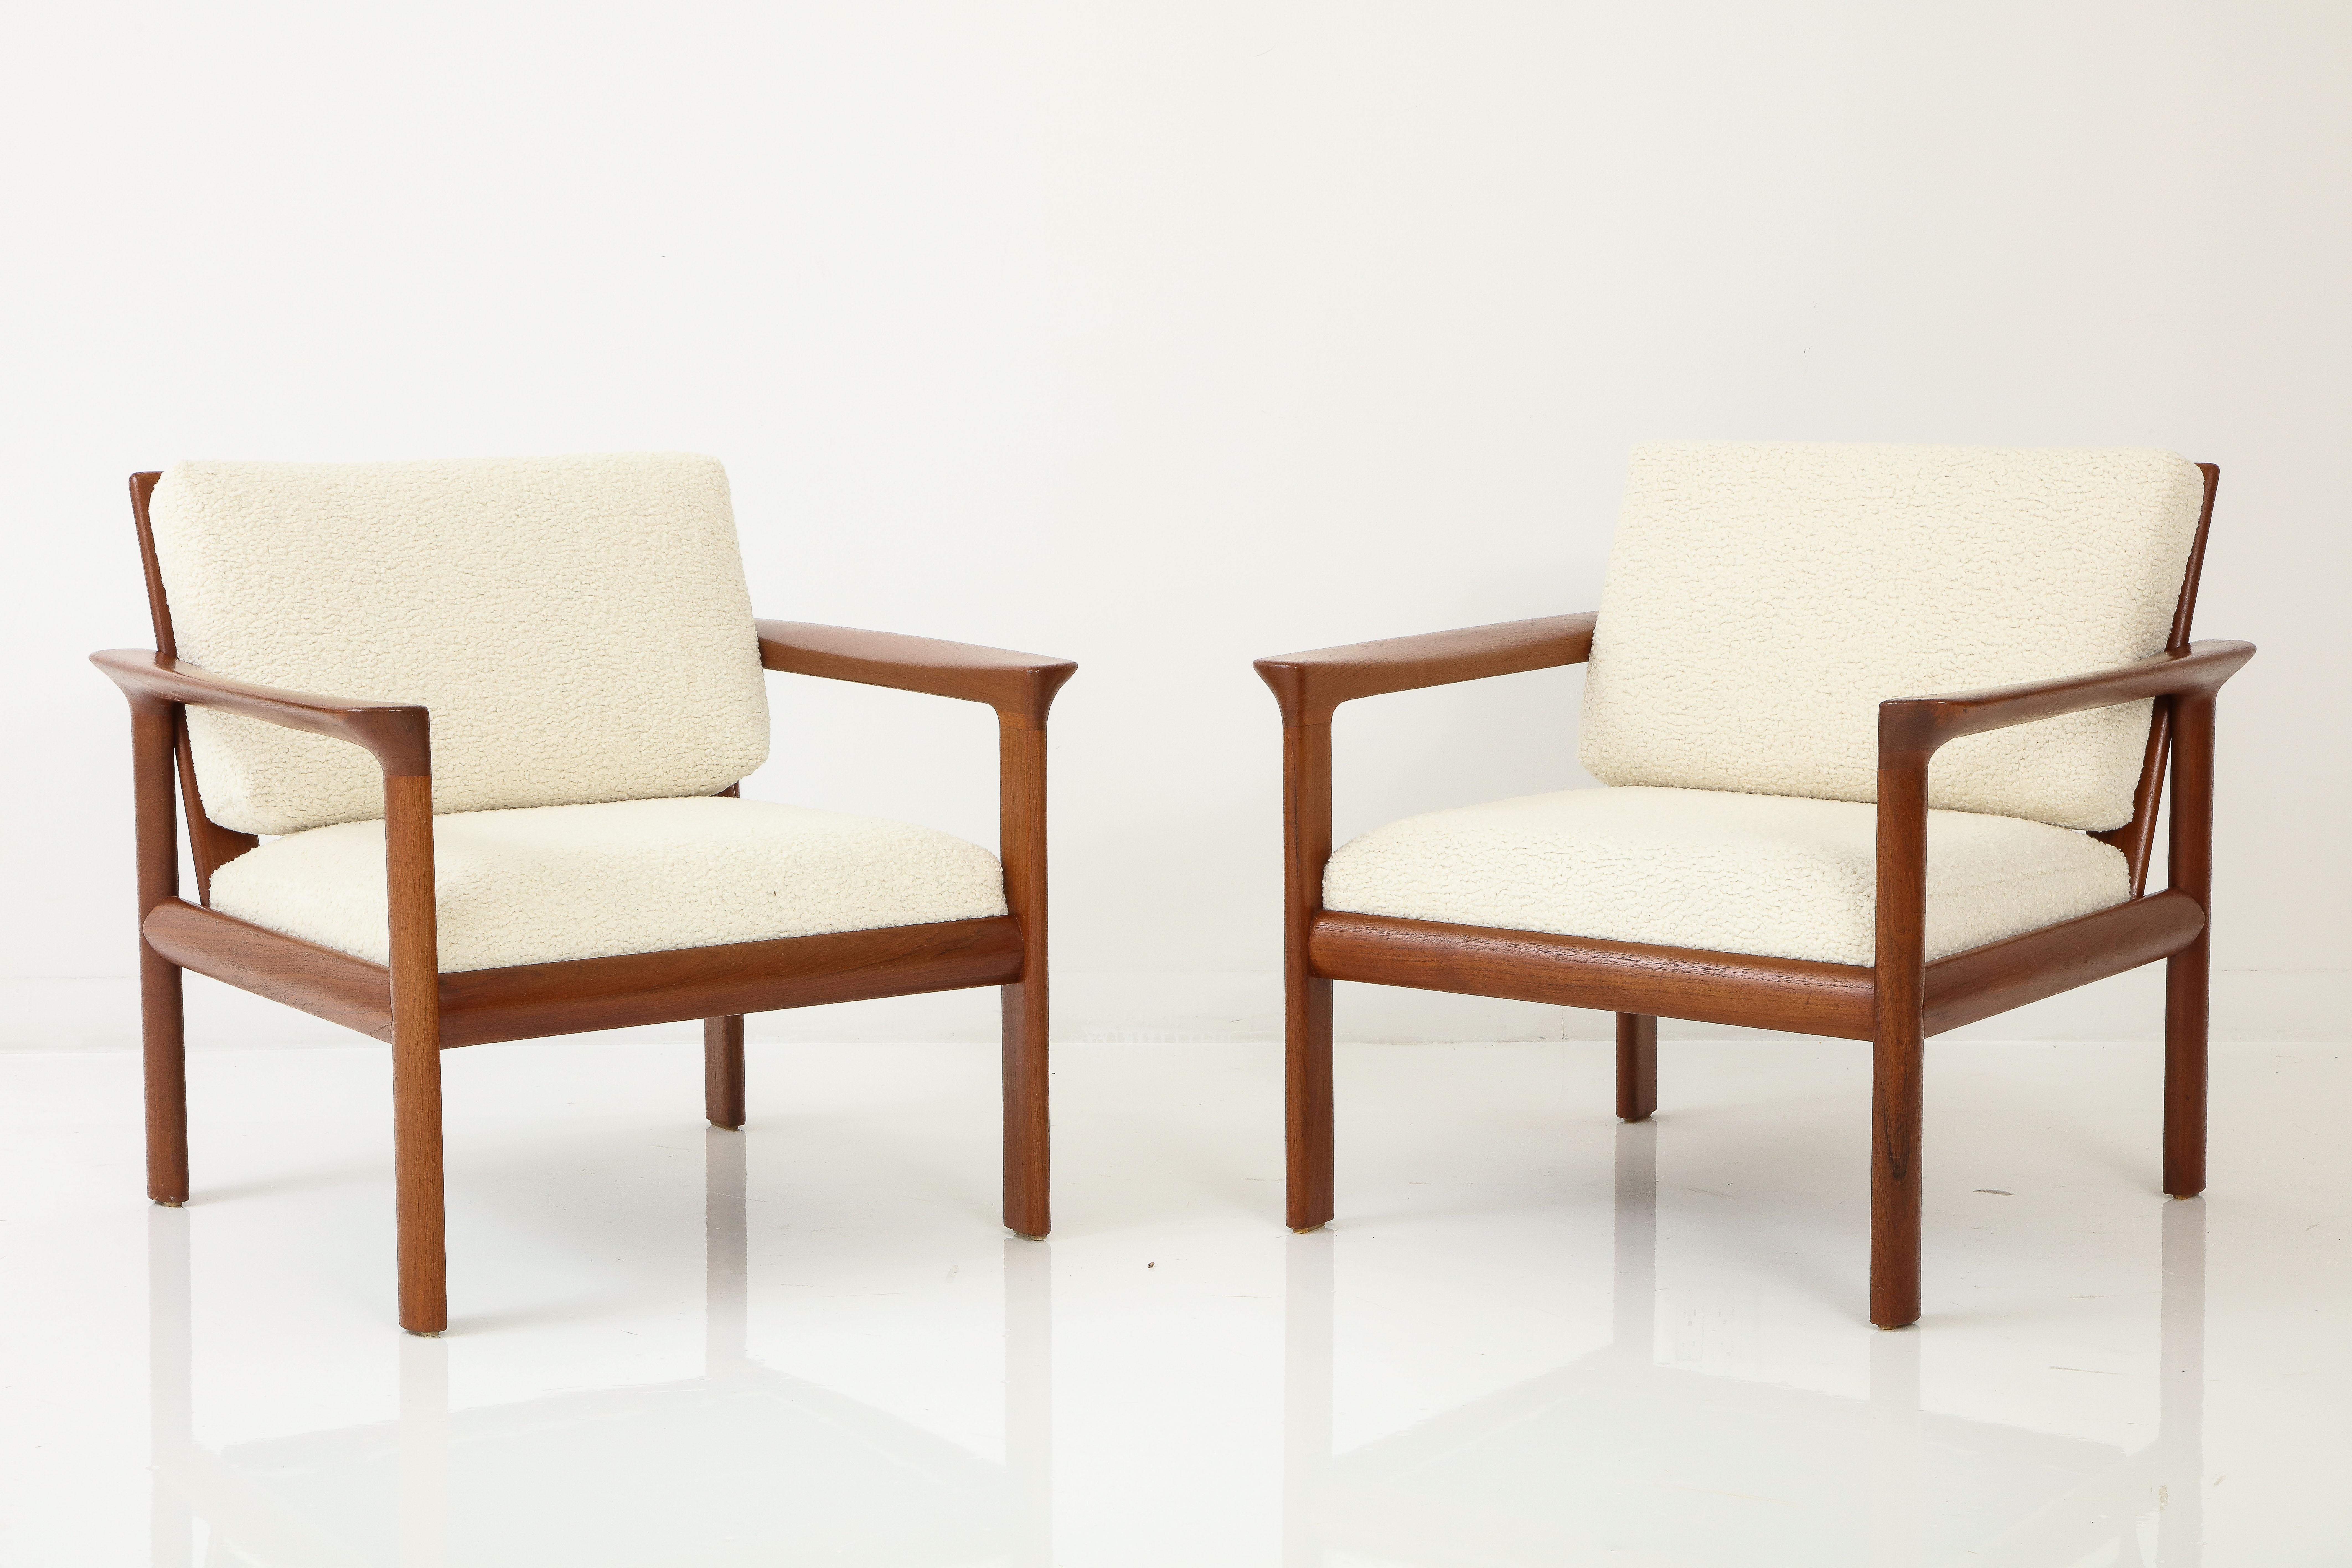 Atemberaubendes Paar 1970er Mid-Century Modern skulpturale Teakholzrahmen Lounge-Stühle von Sven Ellekaer für Comfort entworfen, vollständig restauriert mit neuen Bouclé Stoff Kissen.